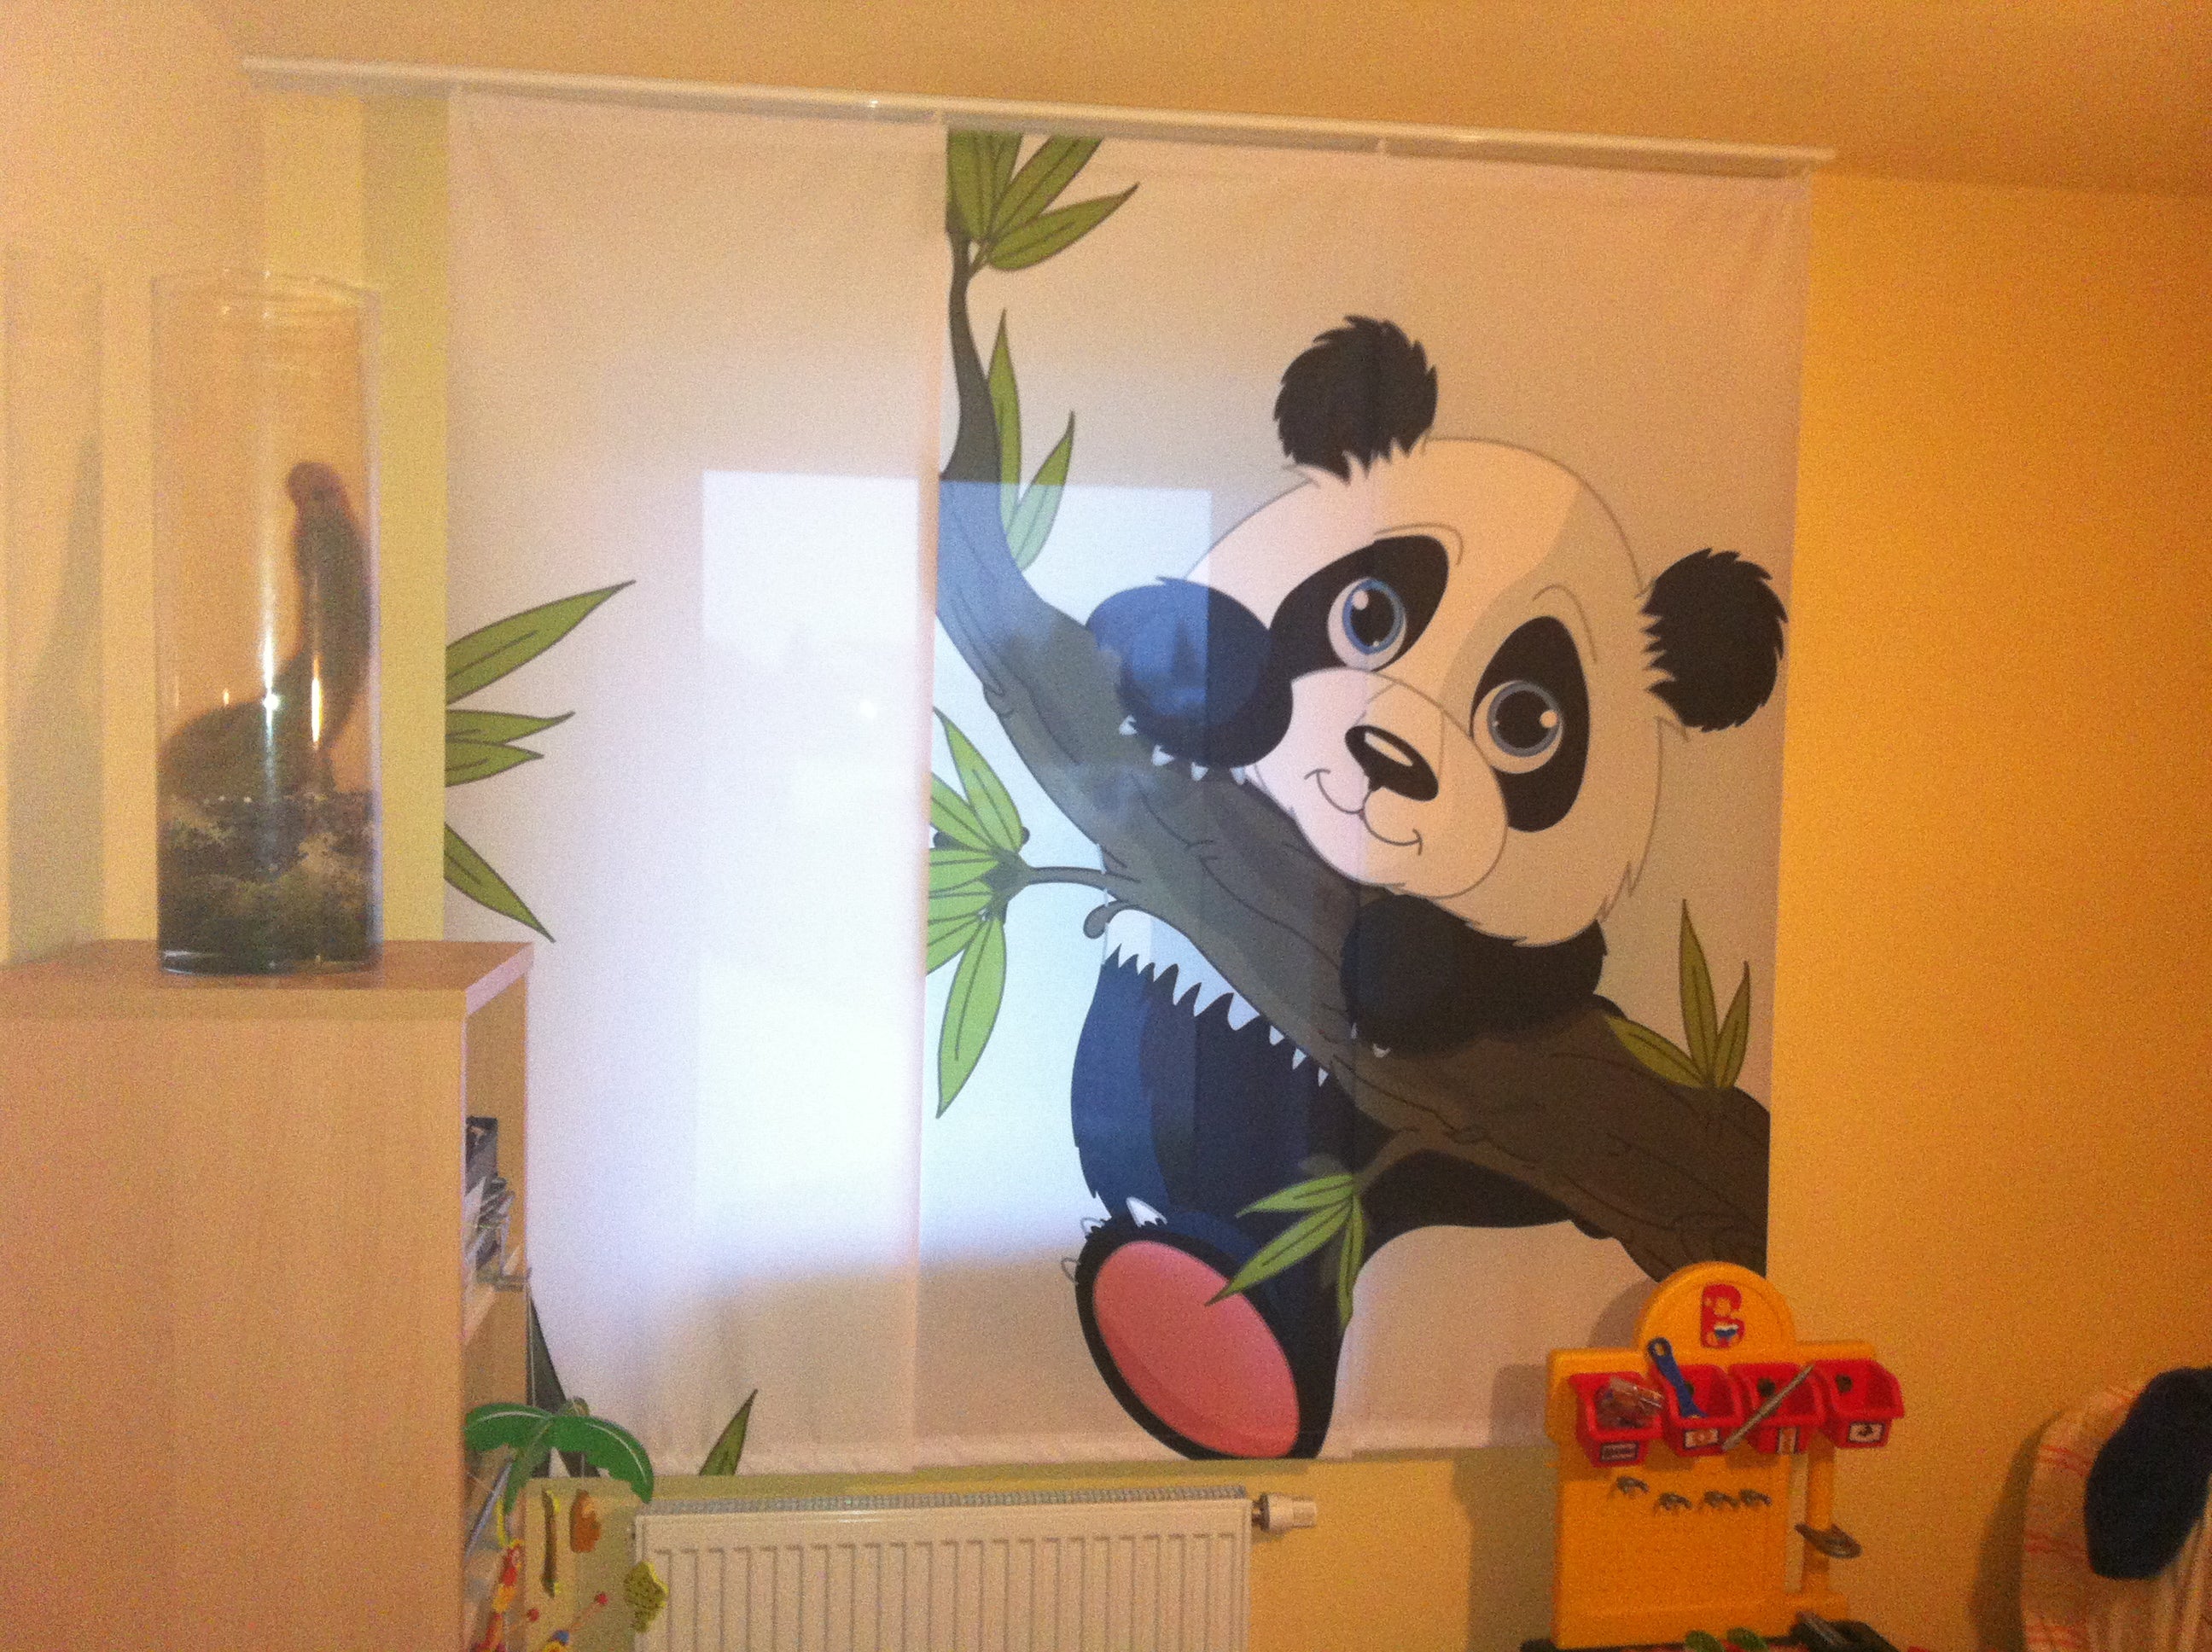 Schiebegardinen mit Pandamotiv am Fenster im Kinderzimmer